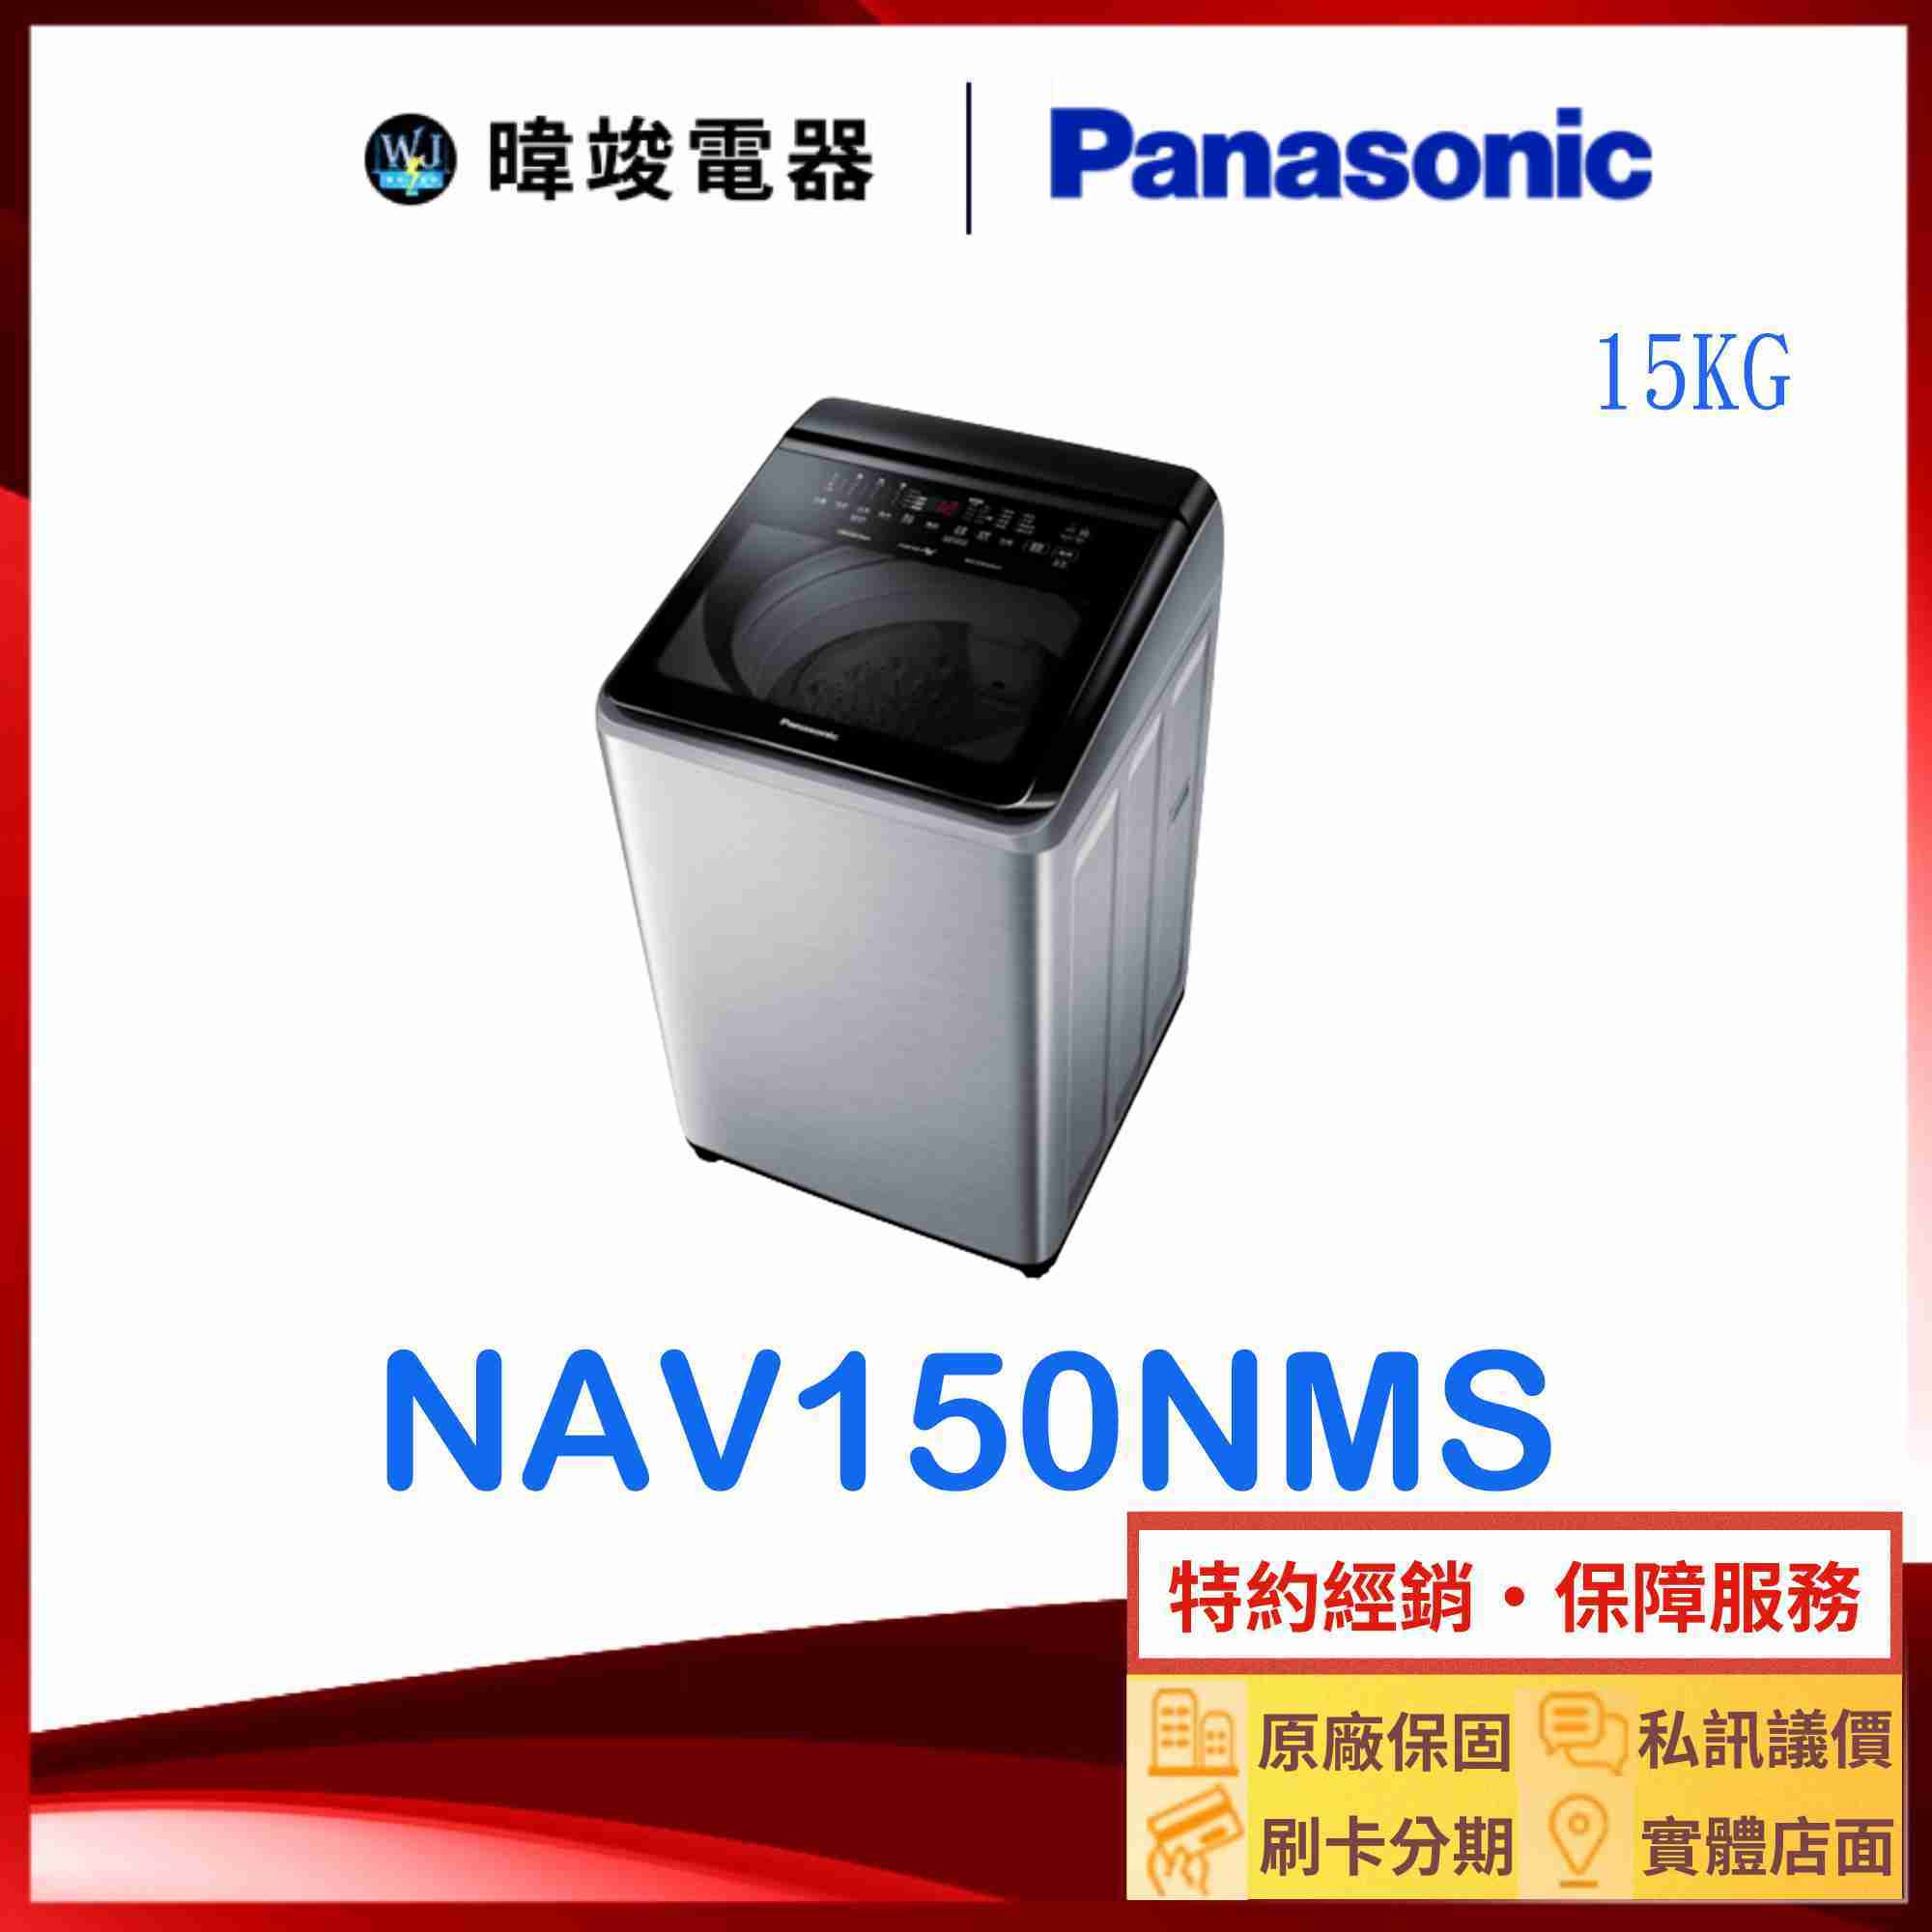 【暐竣電器】Panasonic 國際牌 NA-V150NMS 15公斤洗衣機 NAV150NMS直立式變頻溫水洗 洗衣機